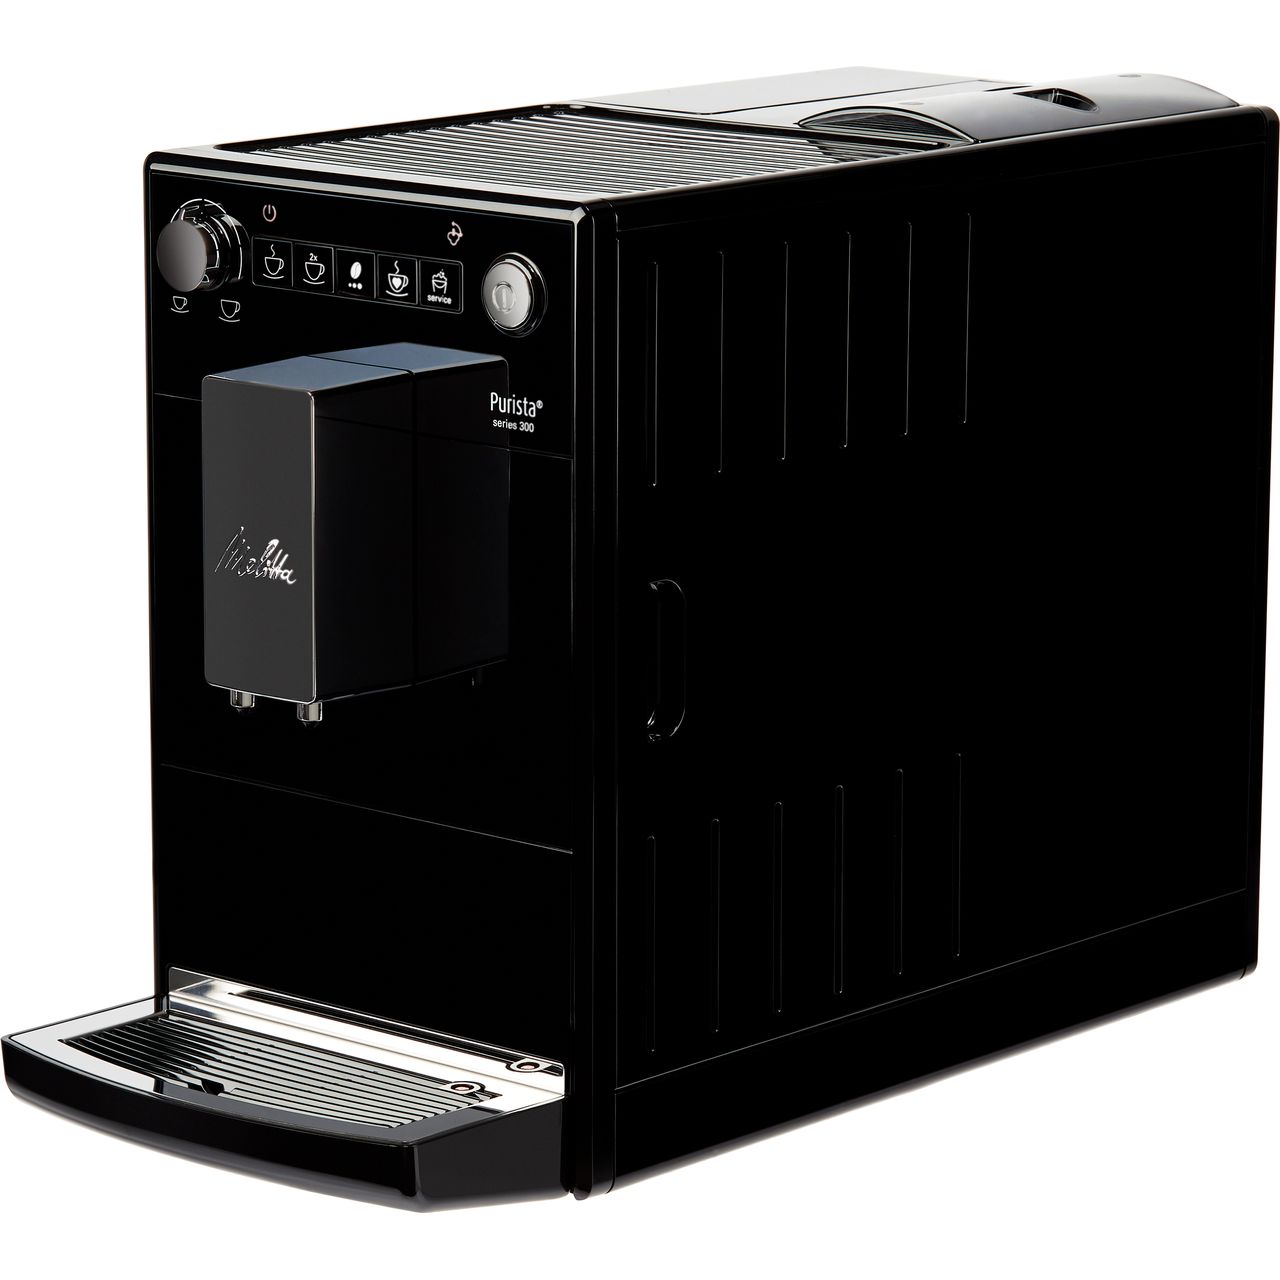 6766034 F230-102 Melitta Automatic Espresso Machine Black Purista Model 